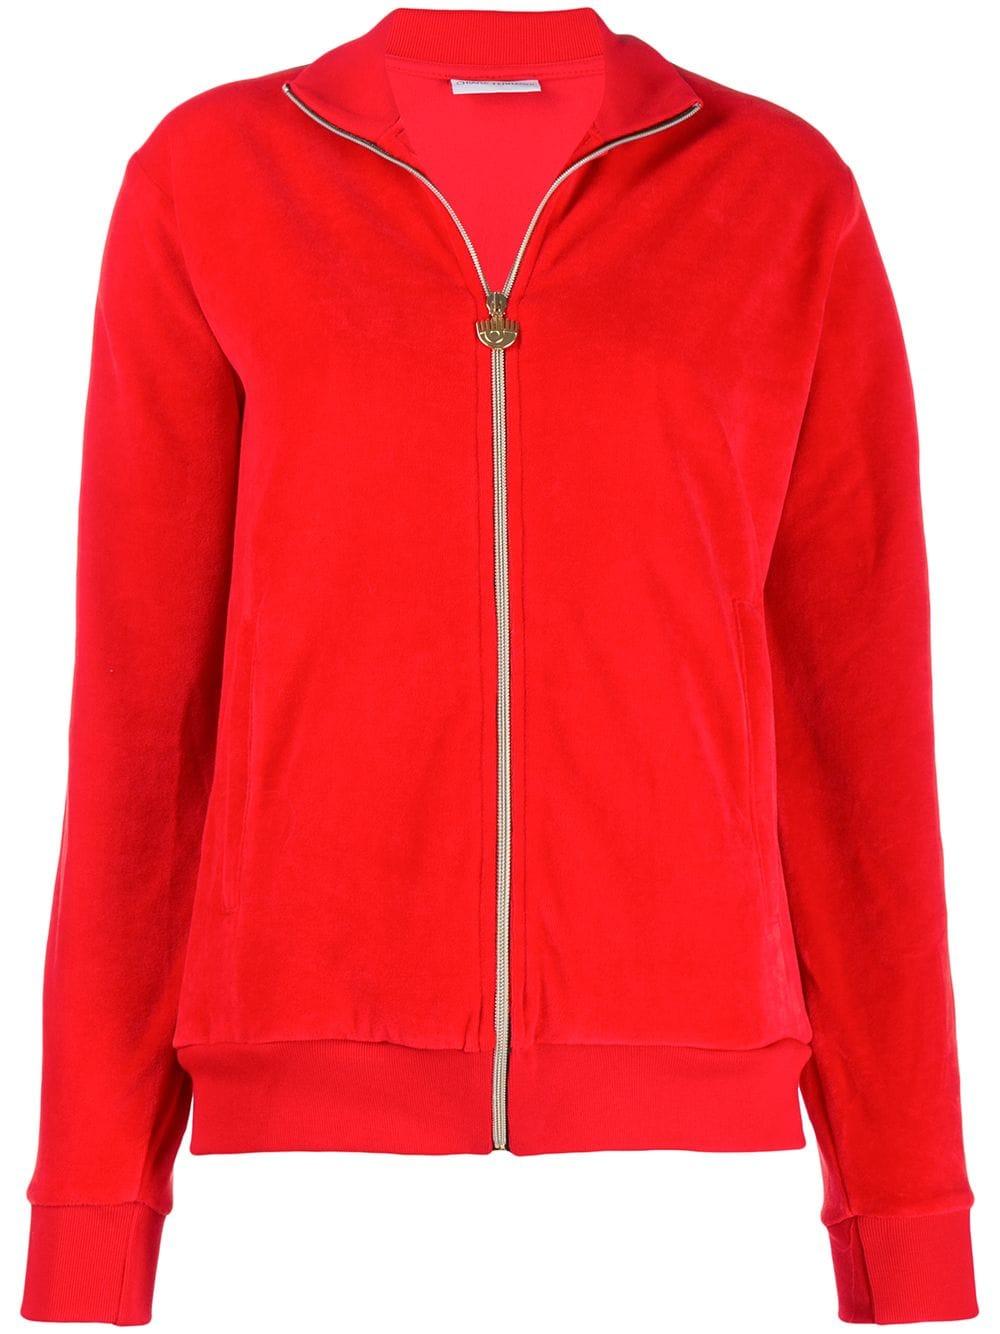 Chiara Ferragni Cotton Logomania Track Jacket in Red - Lyst